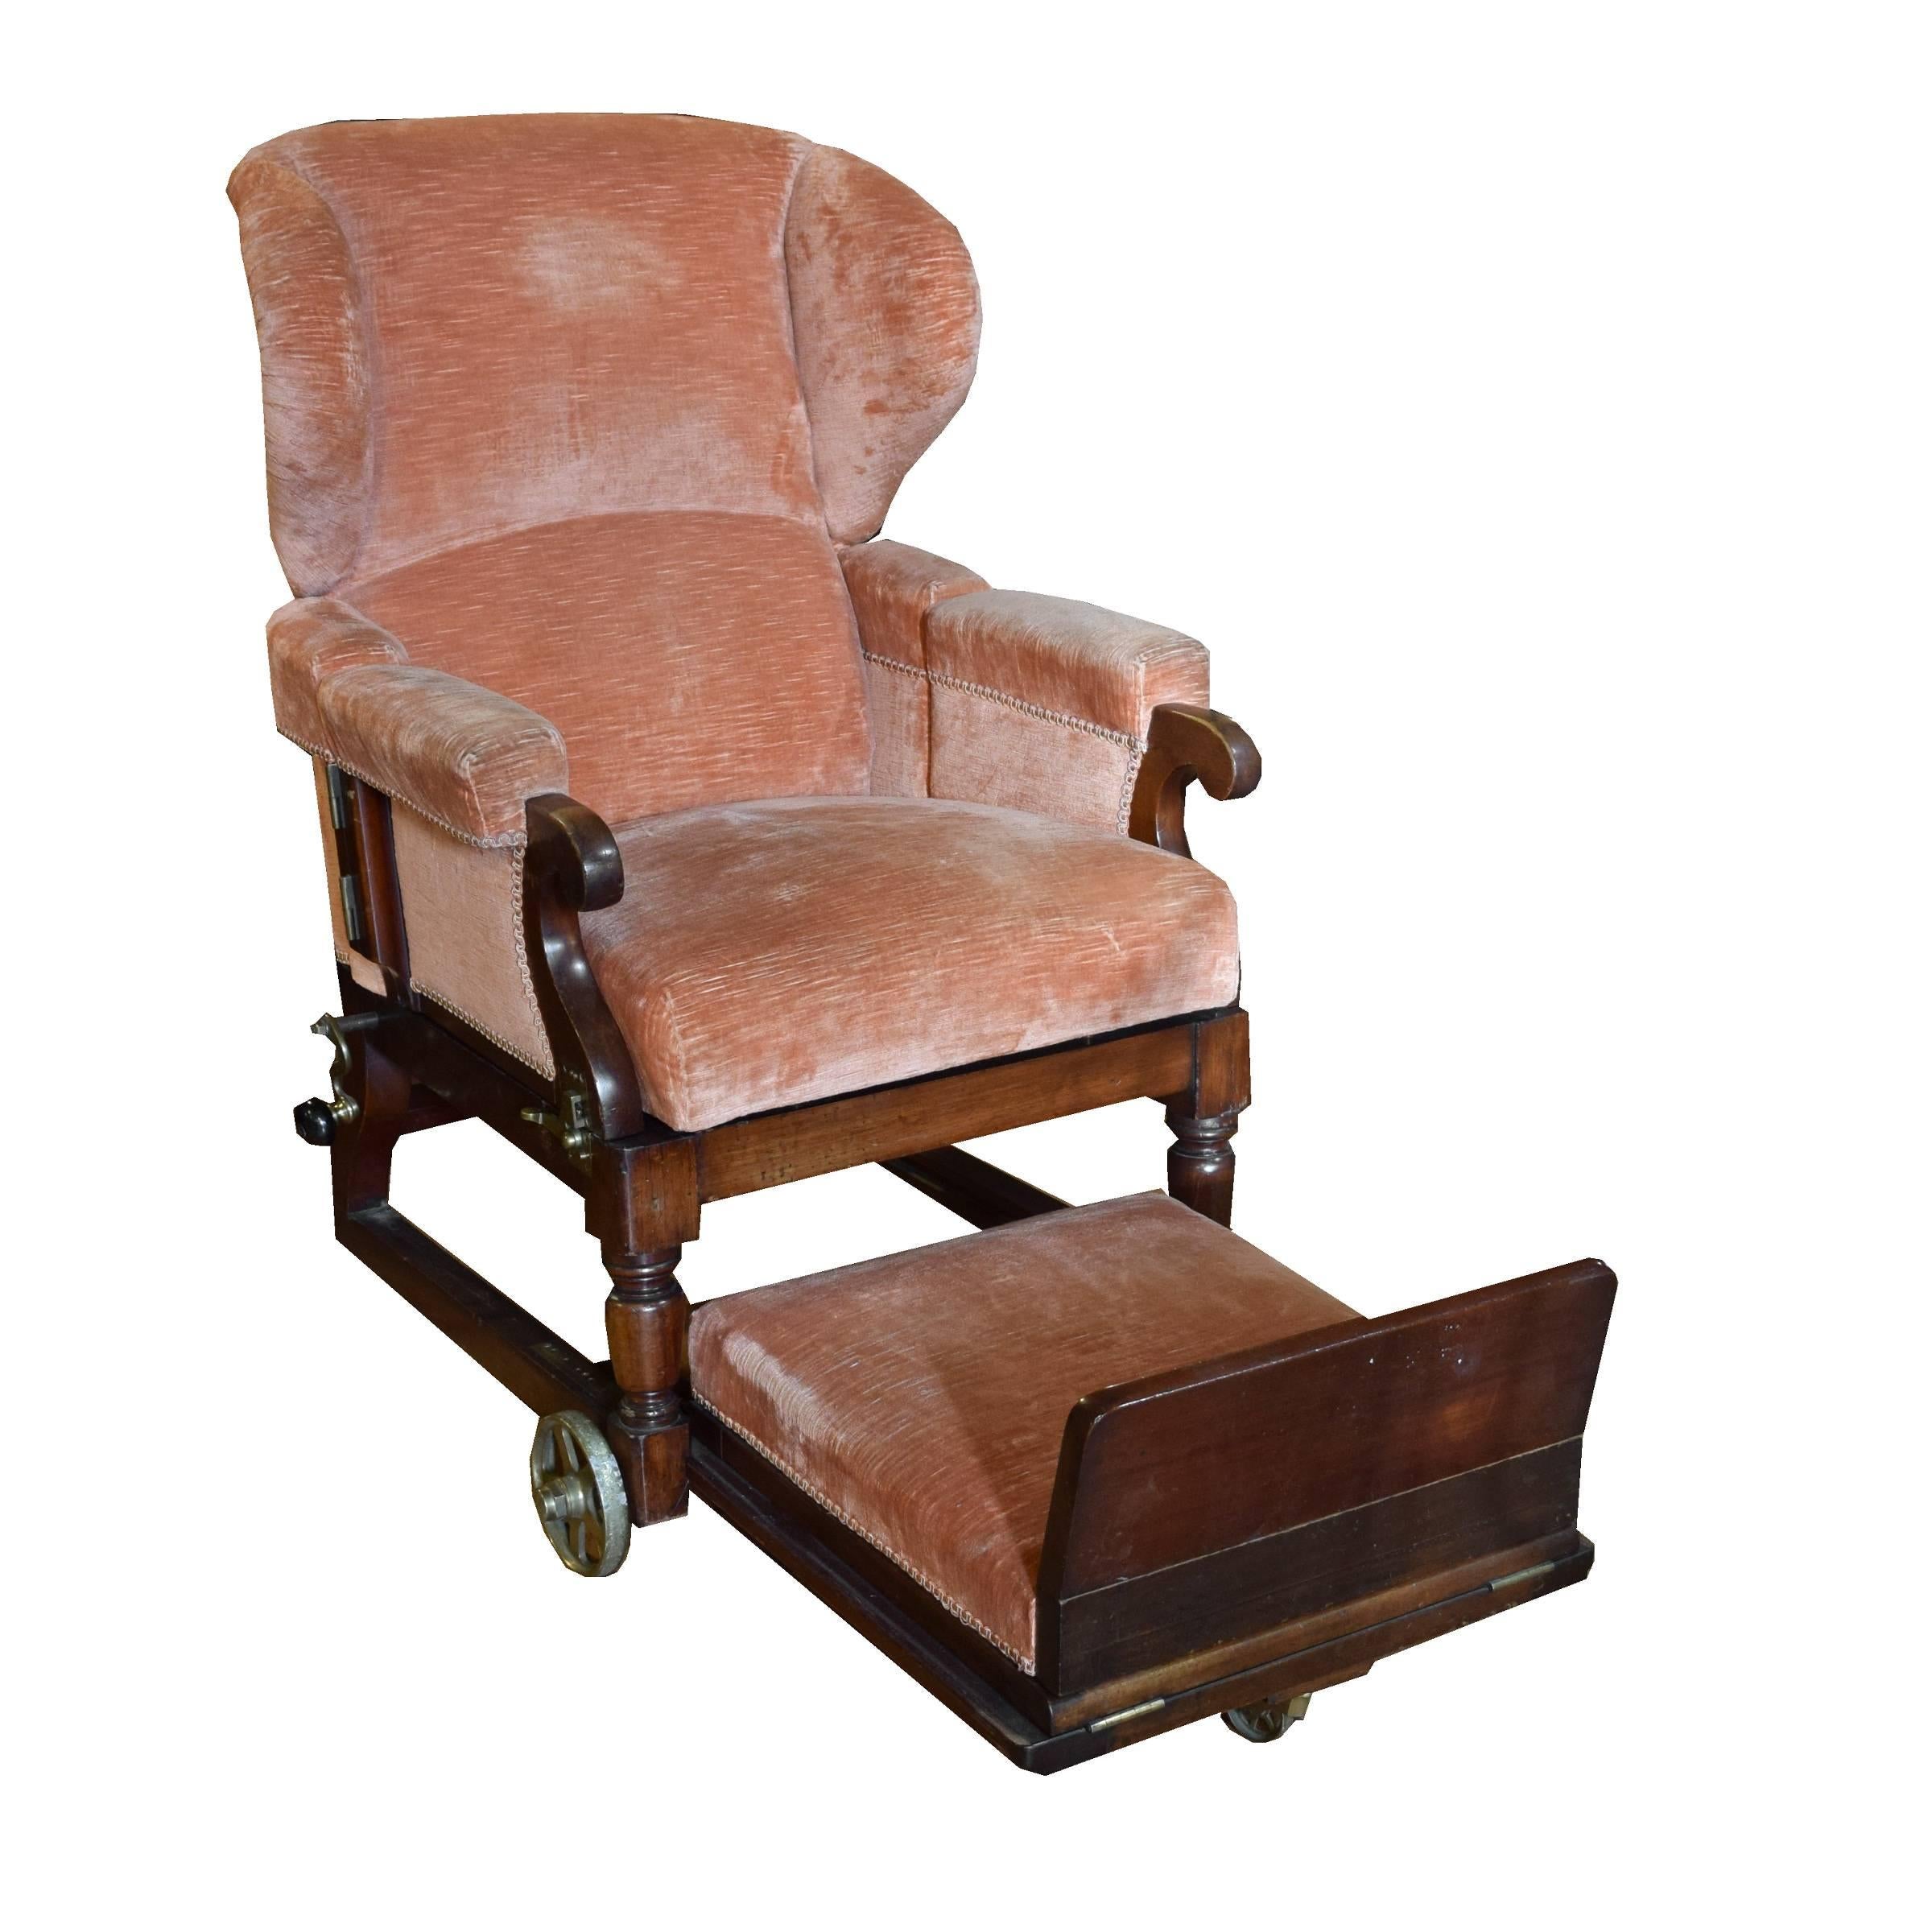 English Adjustable Chair